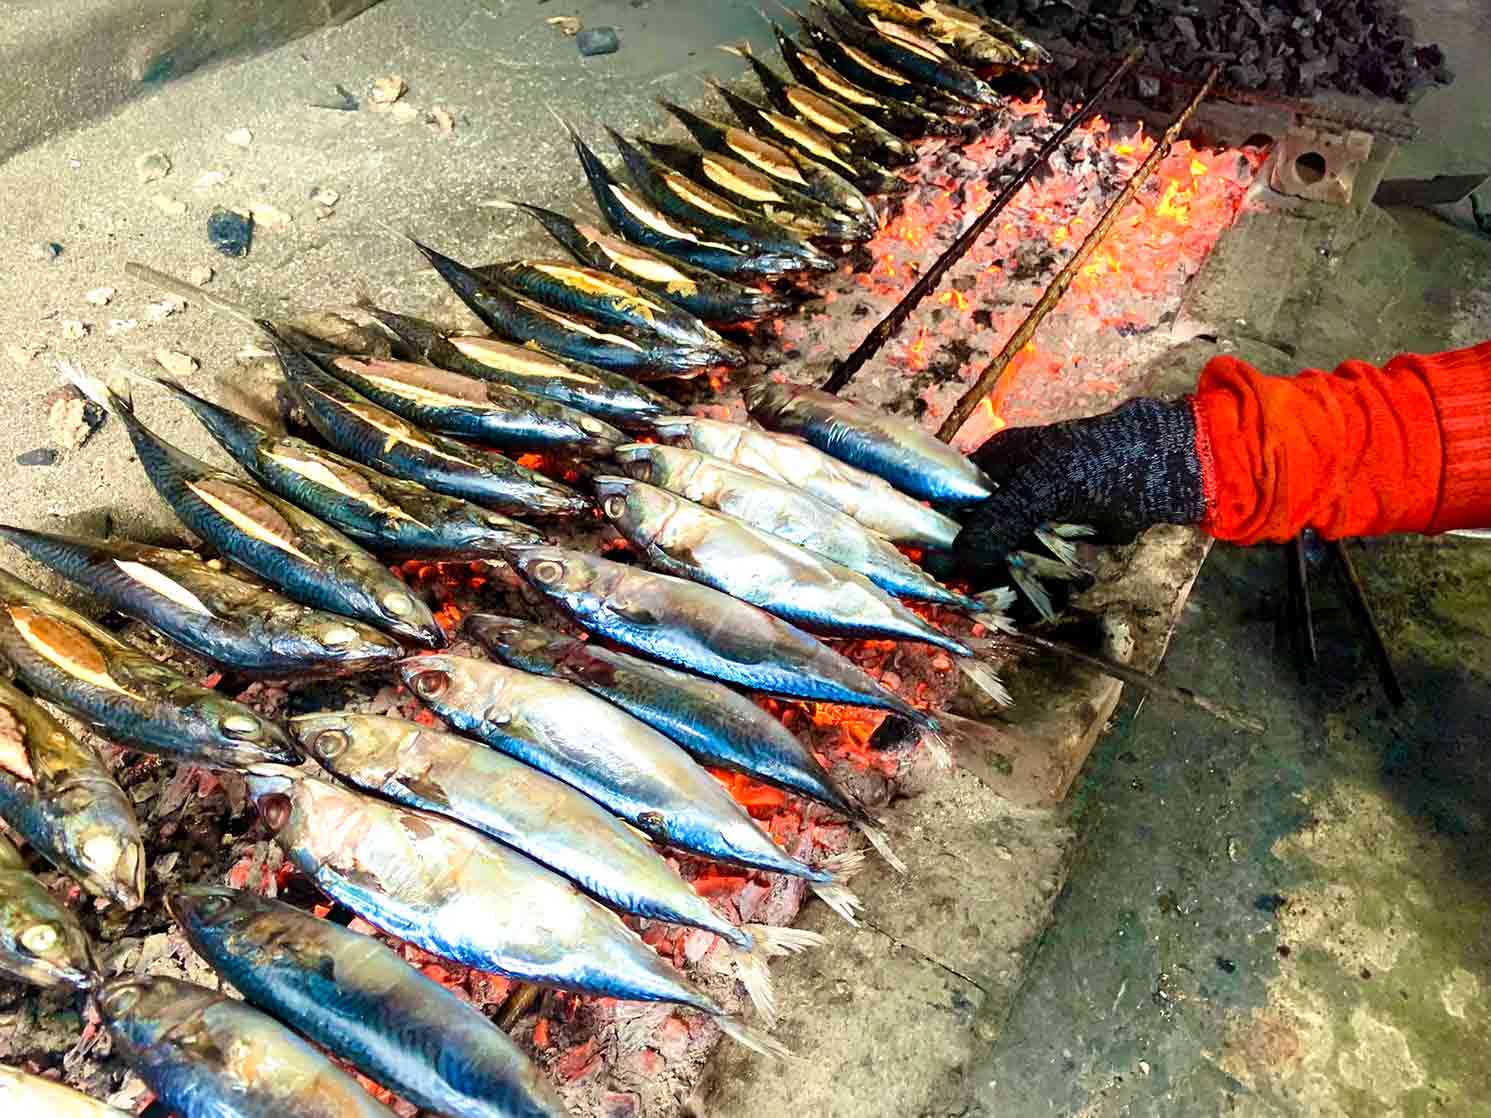 Quá trình nướng phải giữ được mức lửa vừa phải, cá chín đến độ người nướng lật trở đều tay để cá không cháy và giữ được hương vị thơm ngon.